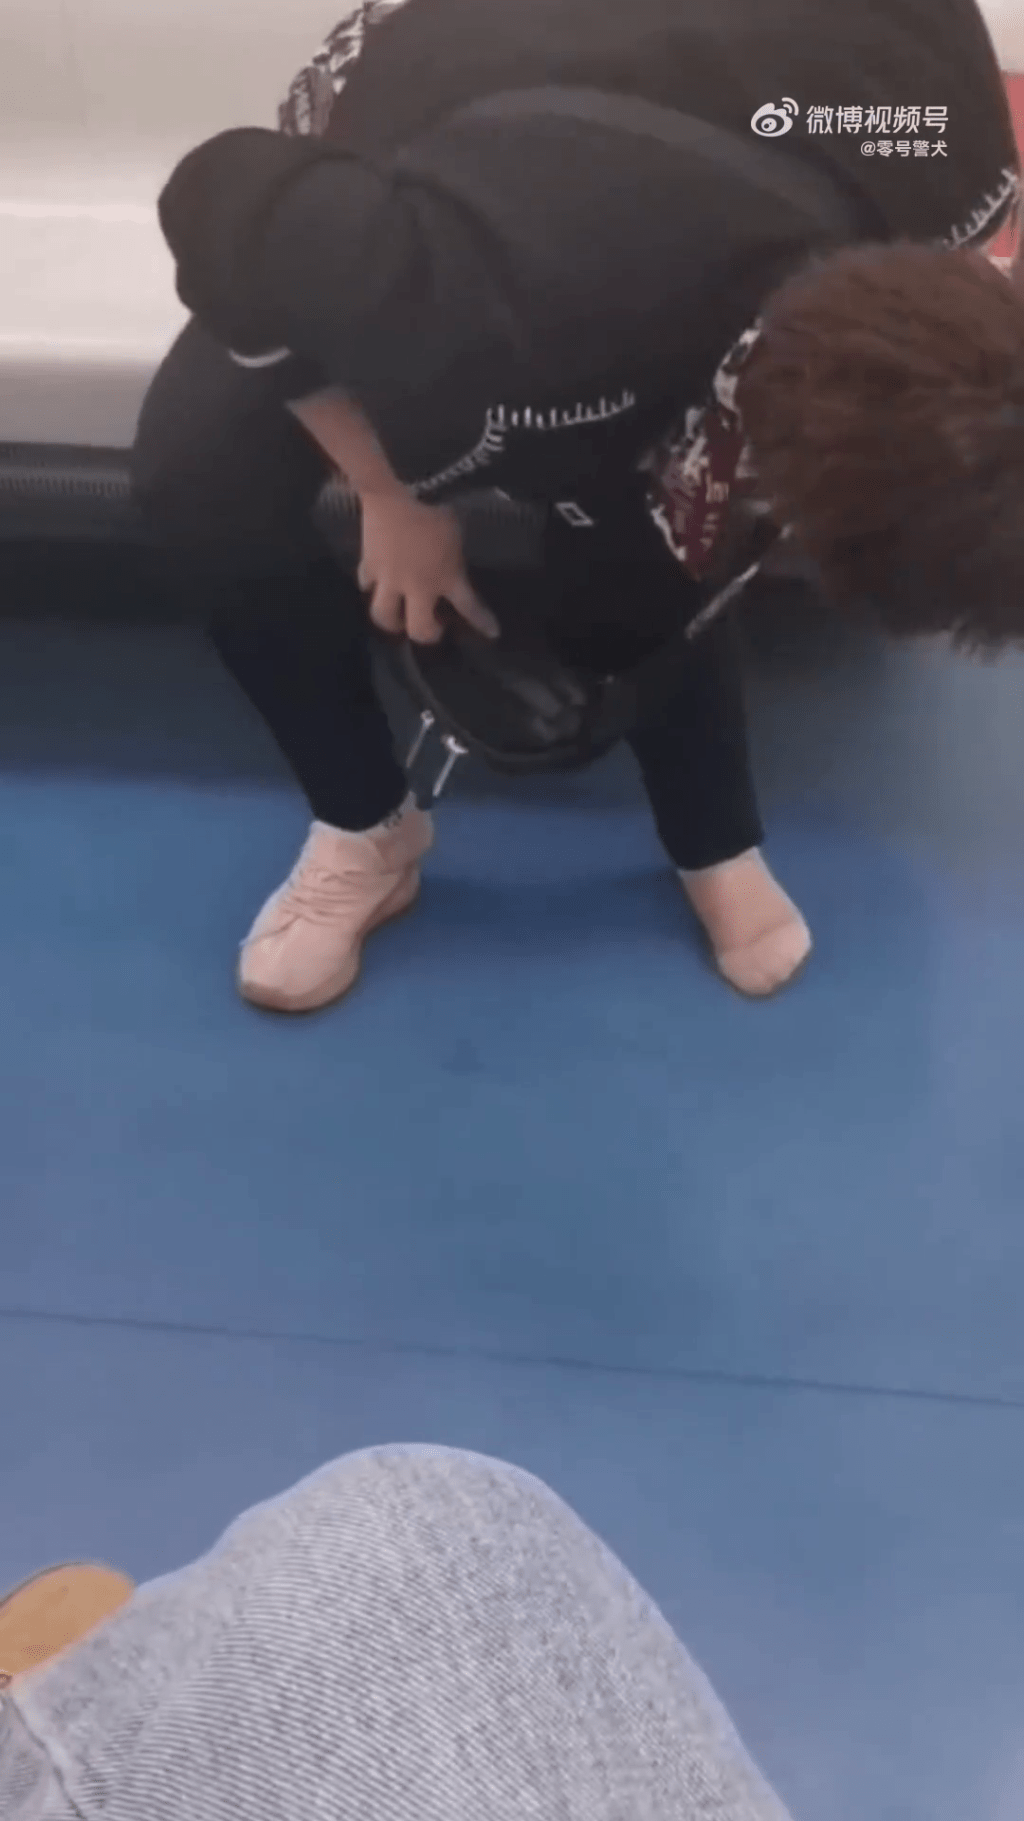 女子在地鐵車廂上四處尋找失去的一隻鞋。